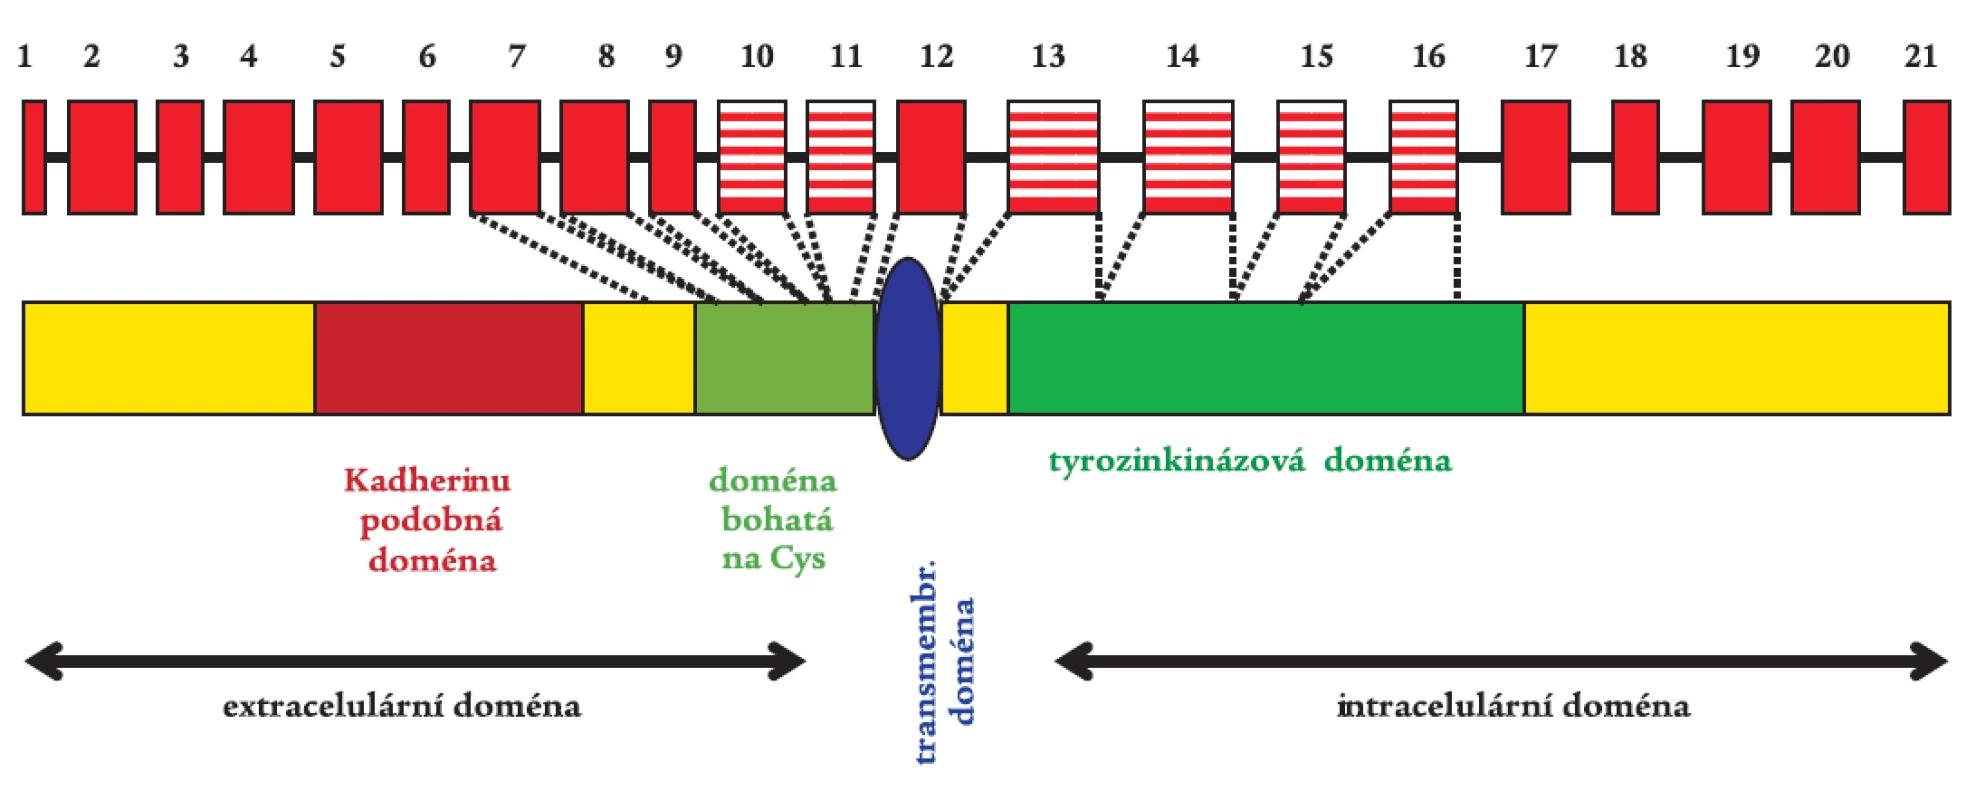 RET proto-onkogen s vyznačenými typickými funkčními doménami.
Gen je tvořen 21 exony, což představuje 55 kb genetického materiálu. Rizikové exony 10, 11, 13, 14, 15, a 16 pro vznik MTC jsou vyznačeny šrafovaně.